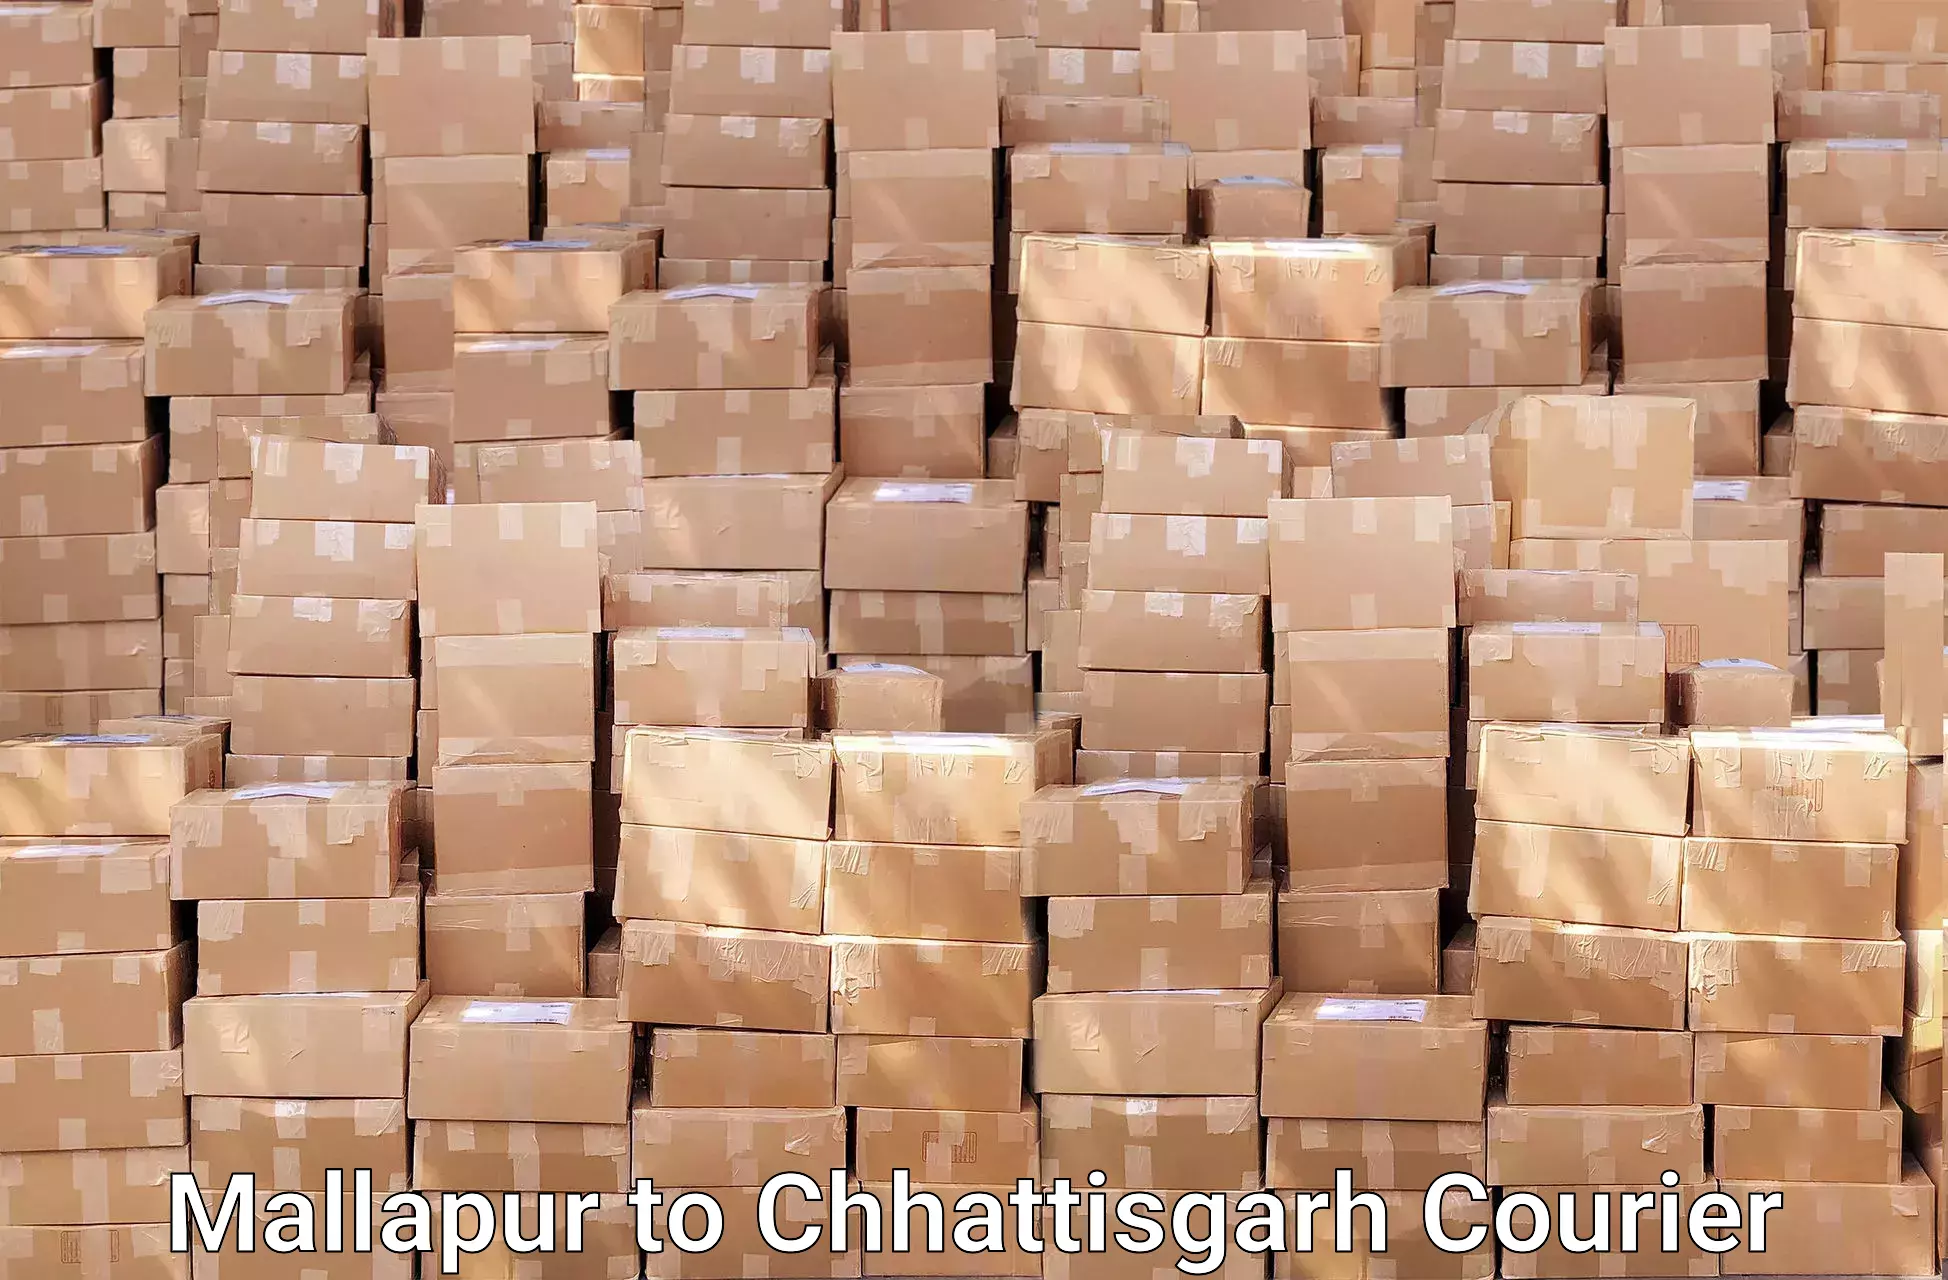 Furniture delivery service Mallapur to Baloda Bazar